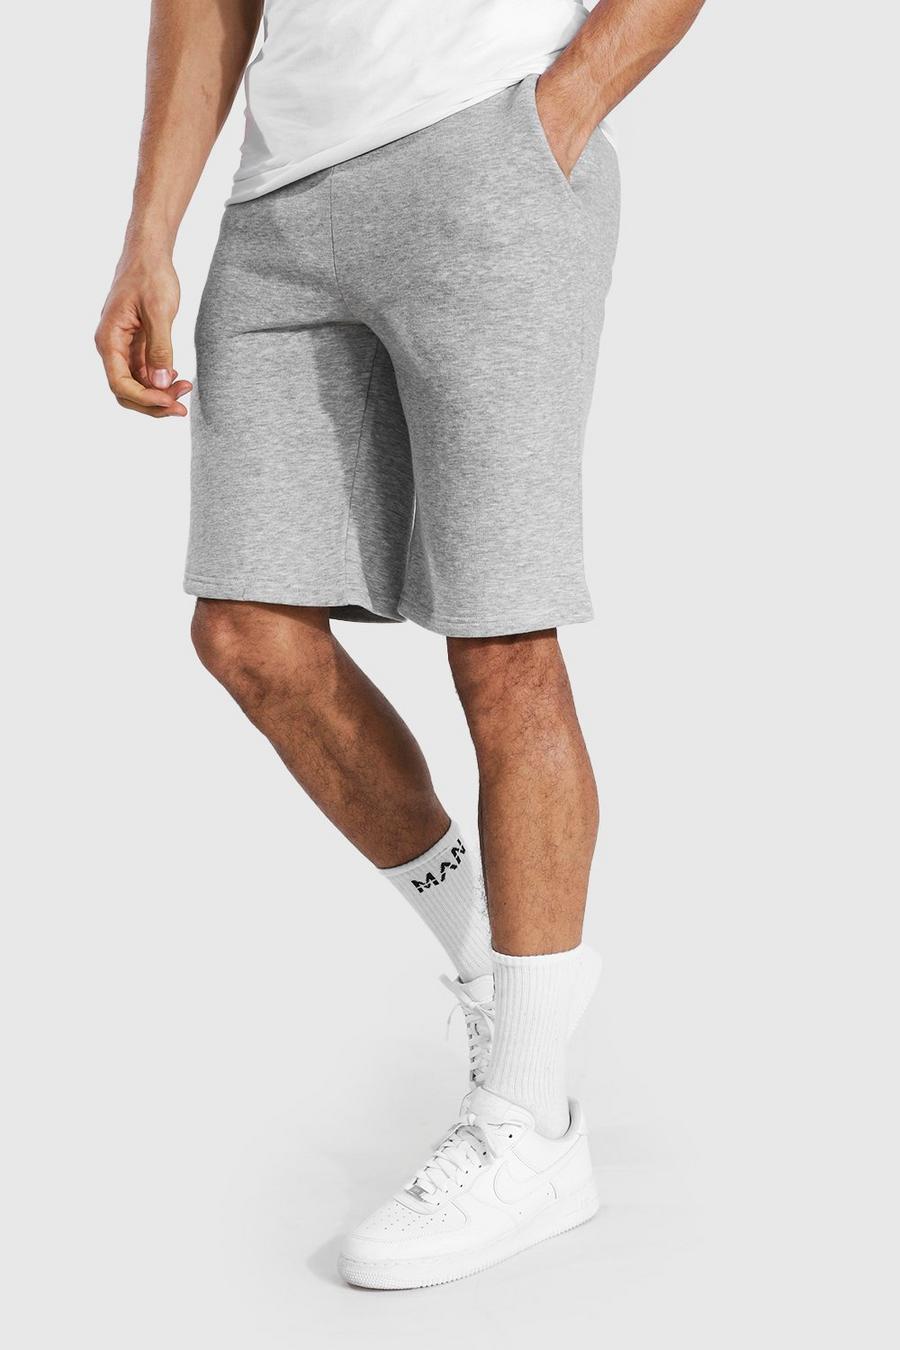 Tall Mittellange Jersey-Shorts mit Tunnelzug, Grau meliert gris